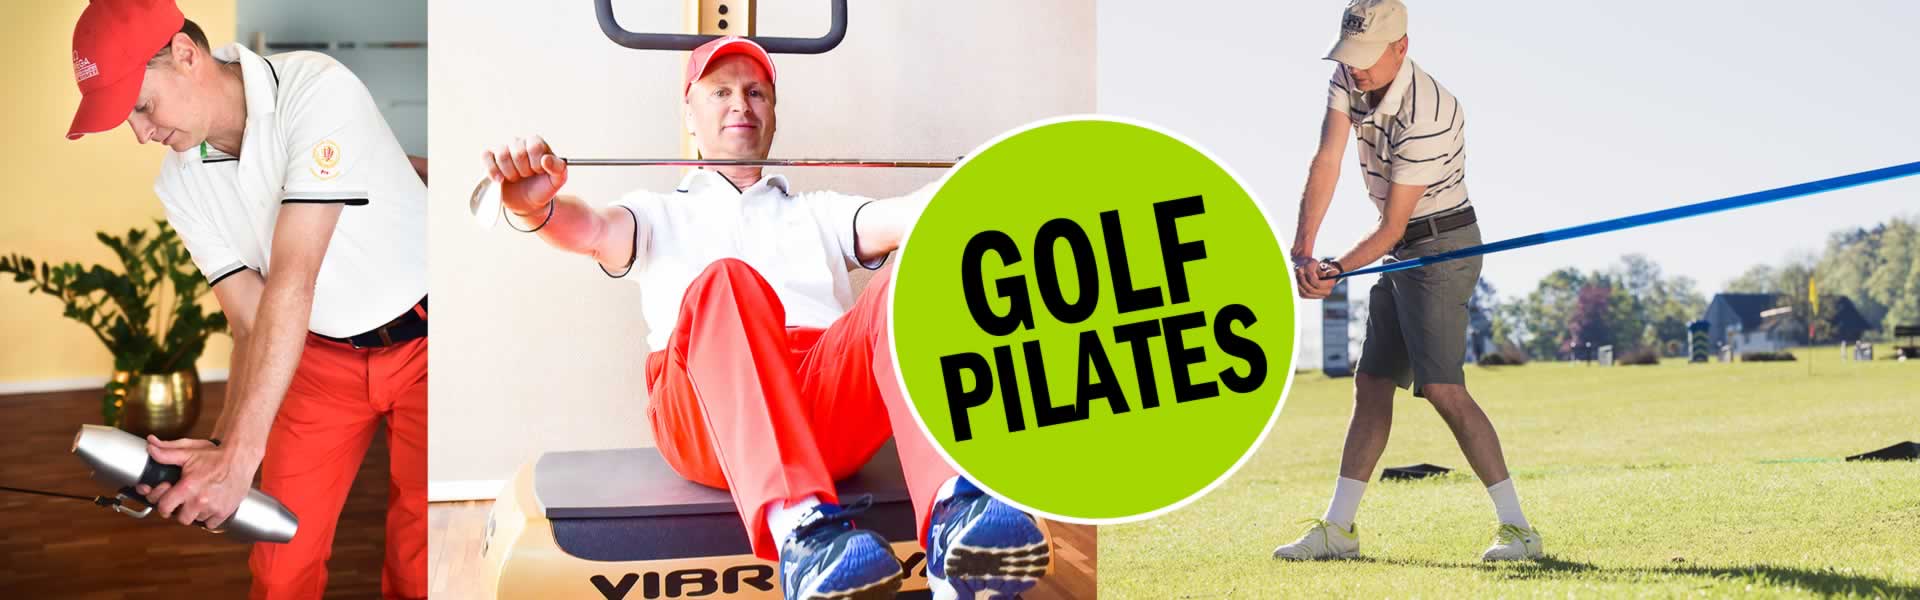 Bilder-Golf-Pilates-Gesundheit-Zuerich-Golf-Pro-Thierry-Rombaldi-01